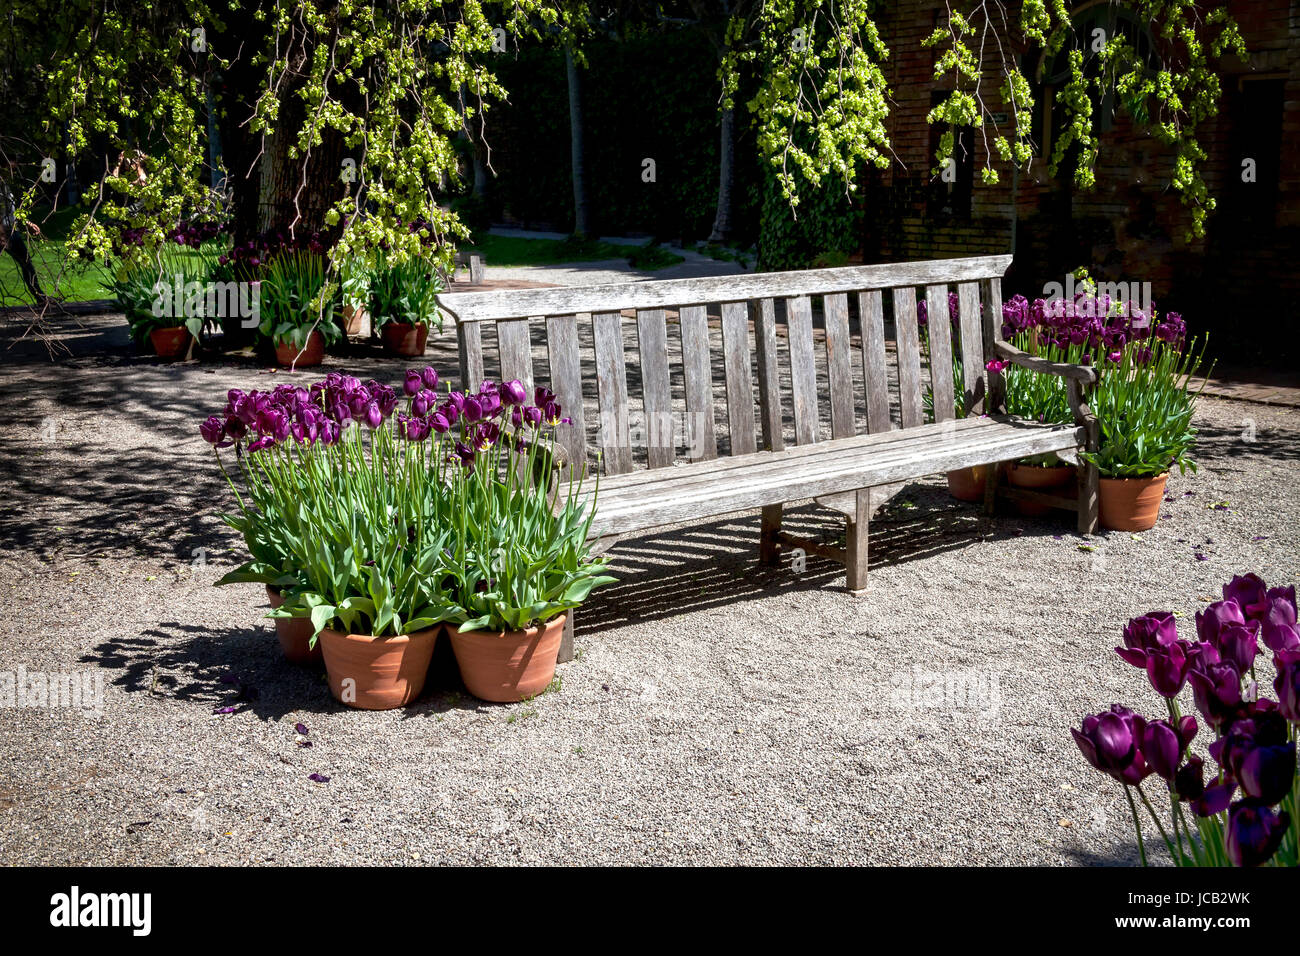 Diese Bank befindet sich in einem formalen botanischen Garten. Der Garten vorhanden frisch blühende violette Tulpen, die überall im Park zu finden. Stockfoto